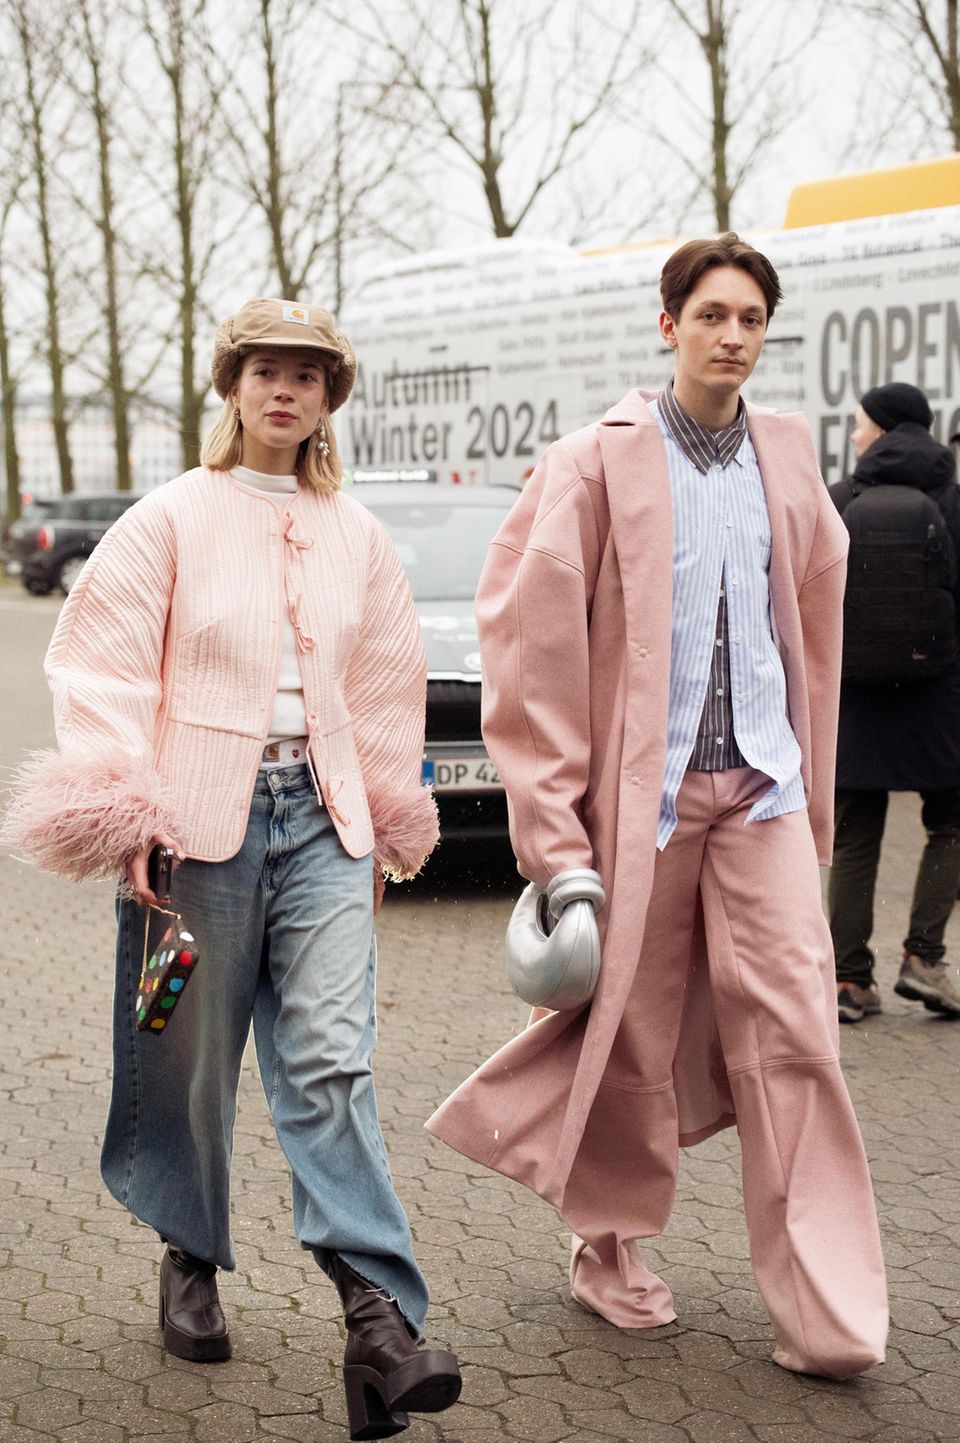 Partnerlook in Altrosa! Dieses stylische Duo besucht die Kopenhagener Fashion Week in abgestimmten Outfits. Sie kombiniert zu ihrer rosafarbenen Jacke eine Wide-Leg-Jeans, die sie in ihre Stiefel gesteckt hat. Ein Hingucker ist die beigefarbene Mütze von Carhartt. Ihr Begleiter trägt eine farblich abgestimmte Kombination aus einer Hose und einem oversized Mantel.